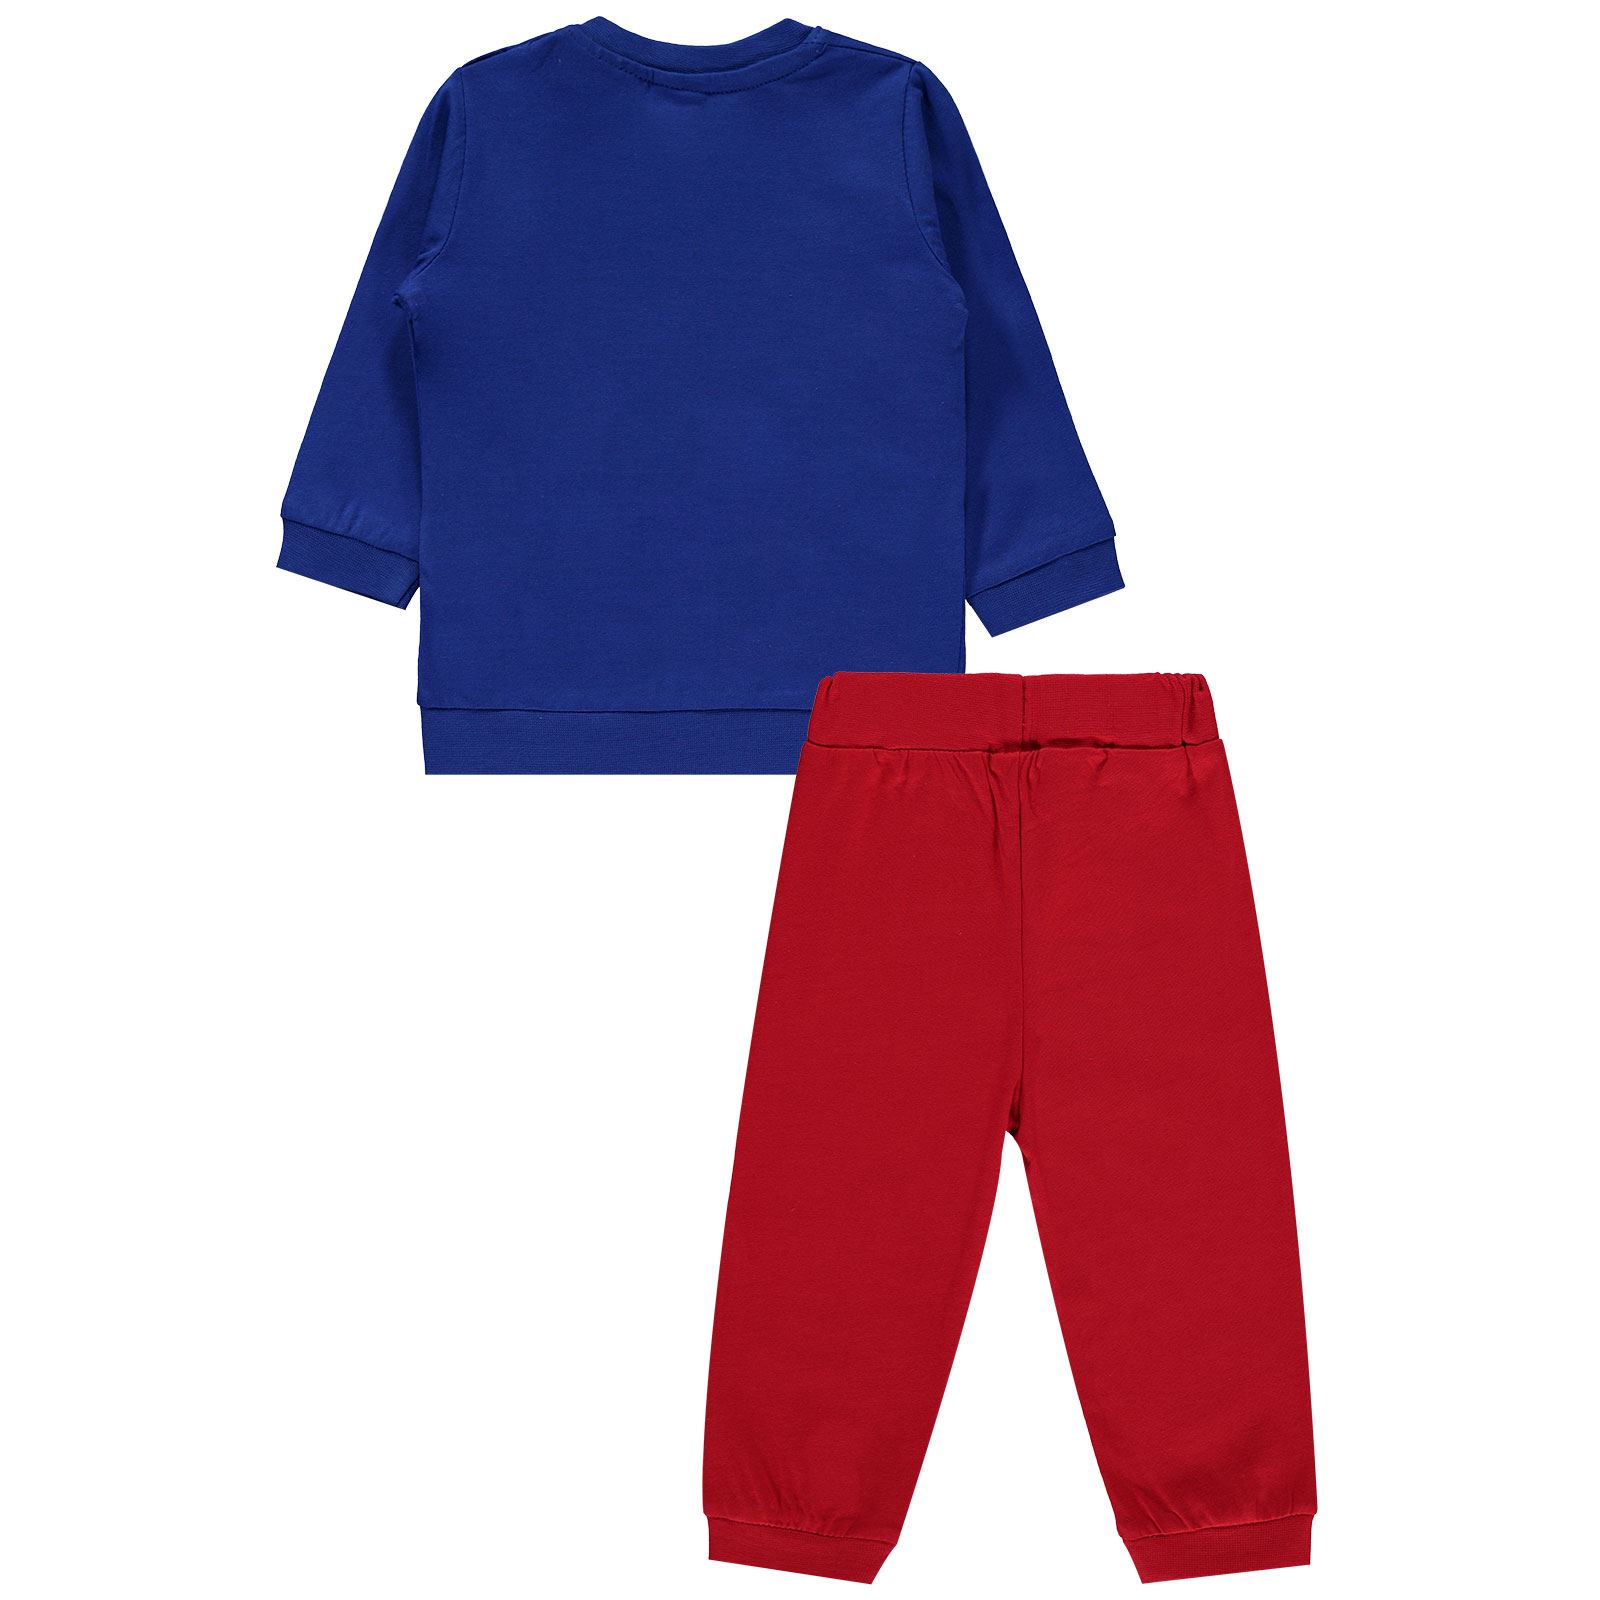 Superman Erkek Bebek Pijama Takımı 6-18 Ay Saks Mavisi